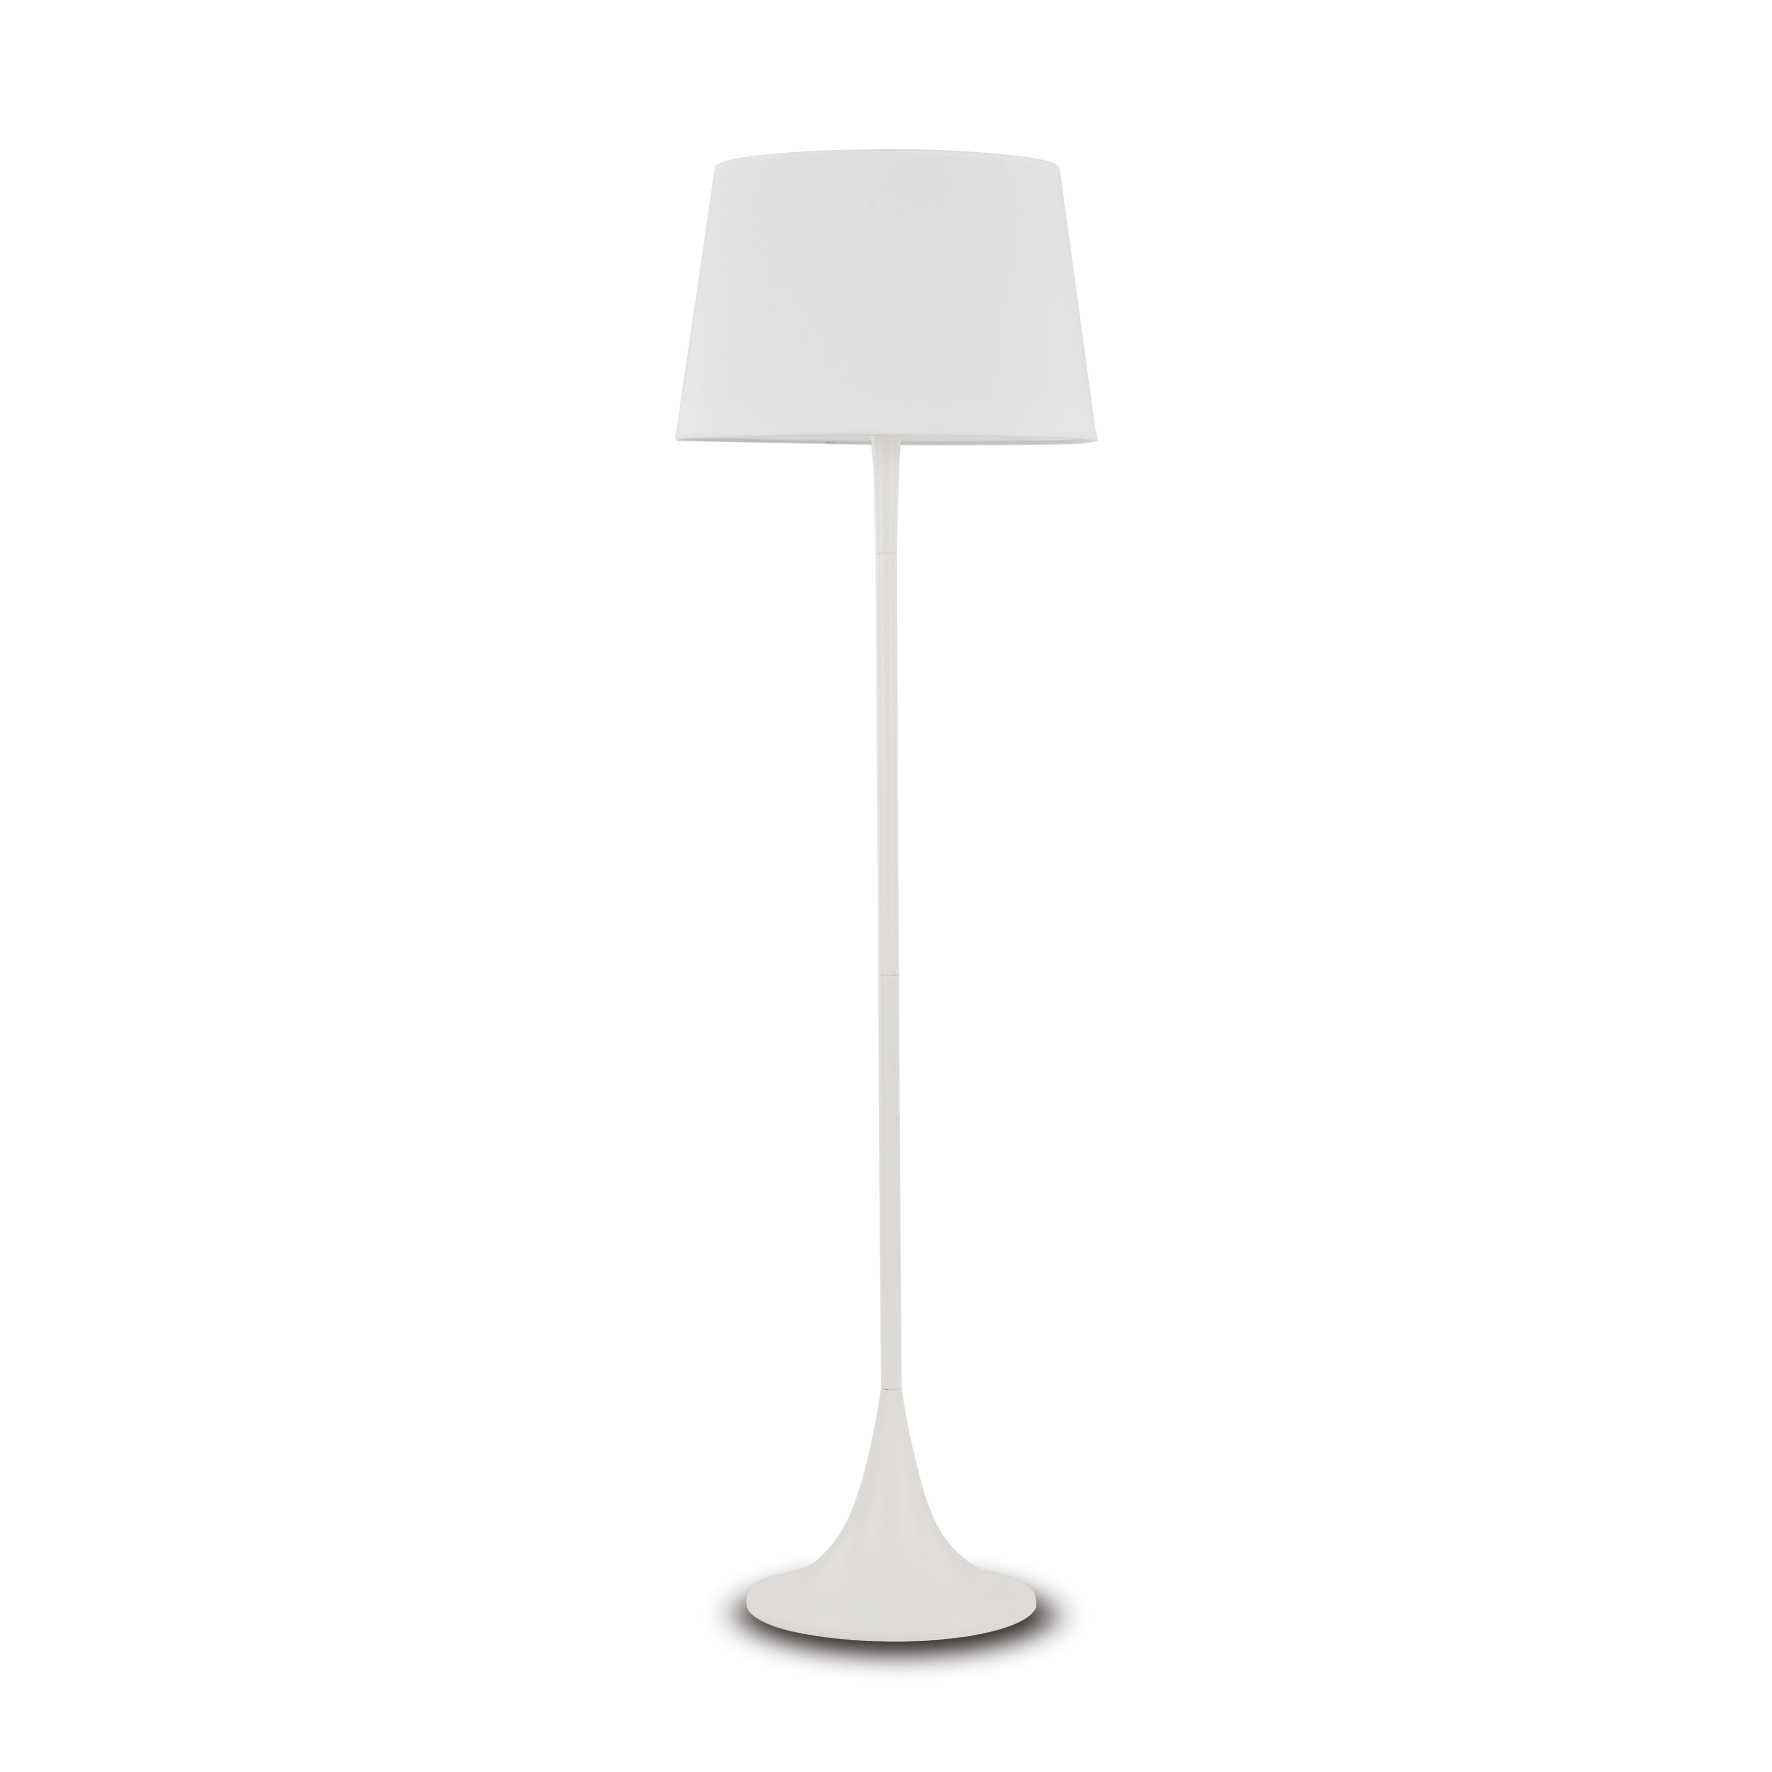 AD hotelska oprema Podna lampa London pt1- Bijele boje slika proizvoda